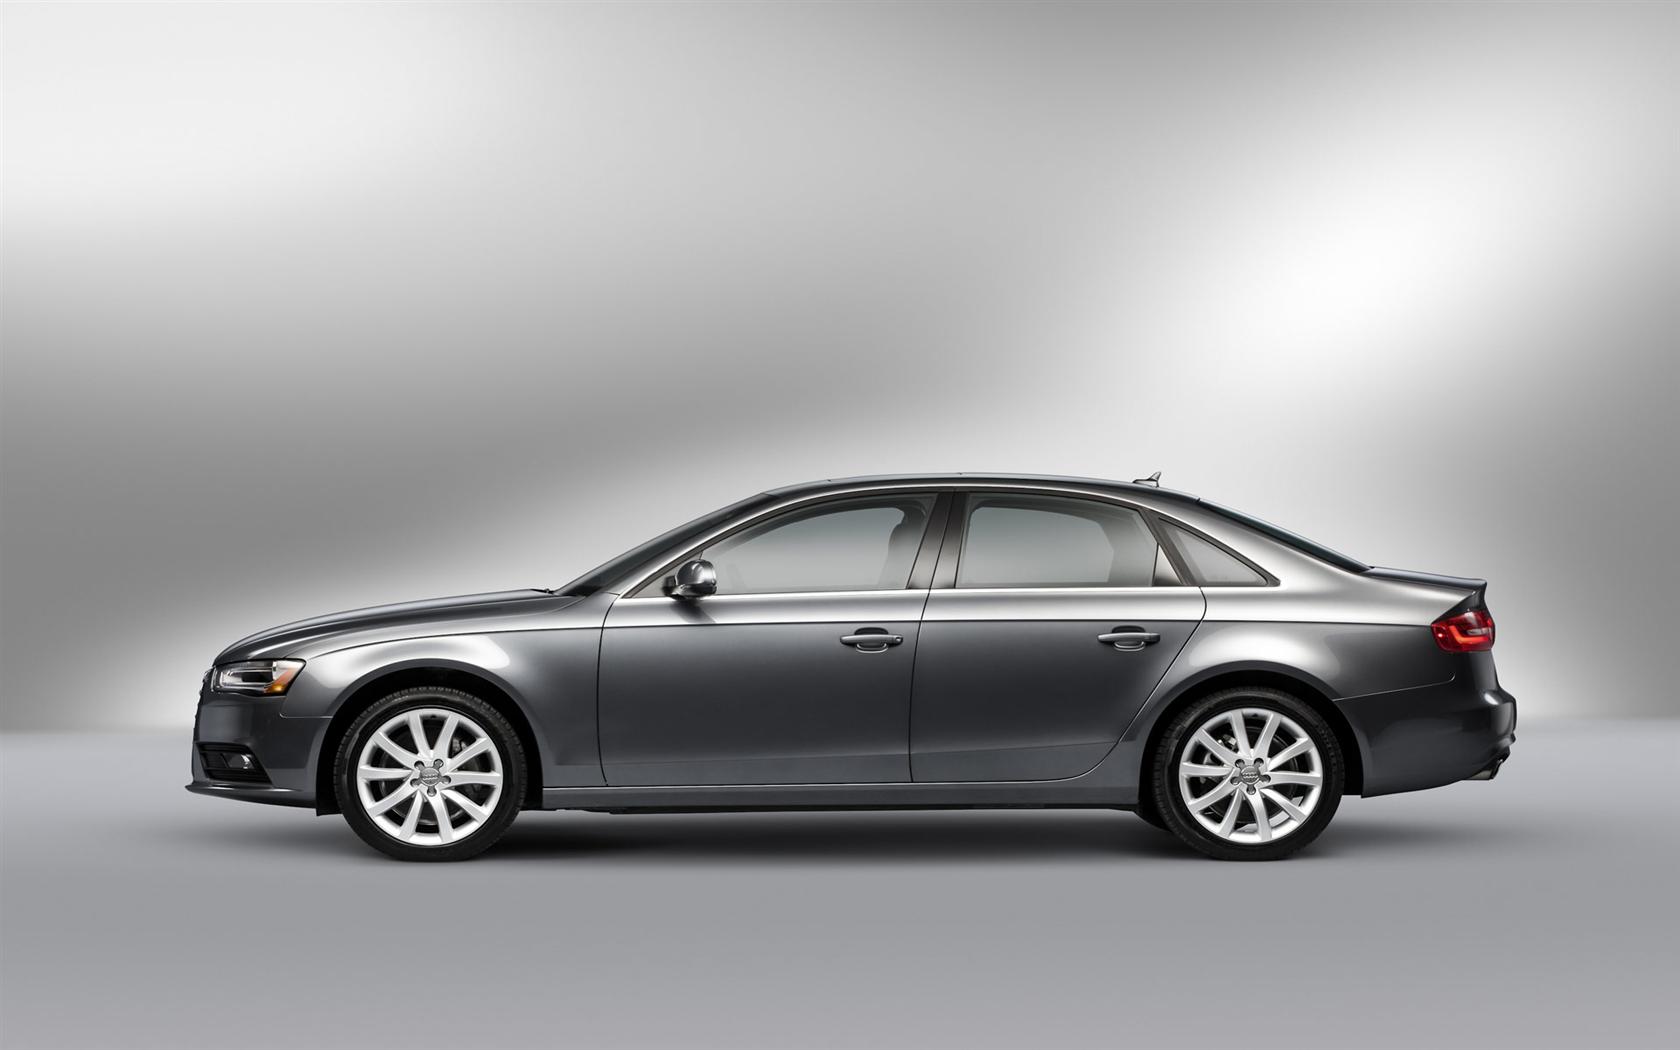 Audi A4 2014 conceptcarz com 2014-Audi-A4-Sedan-Image-05-1680